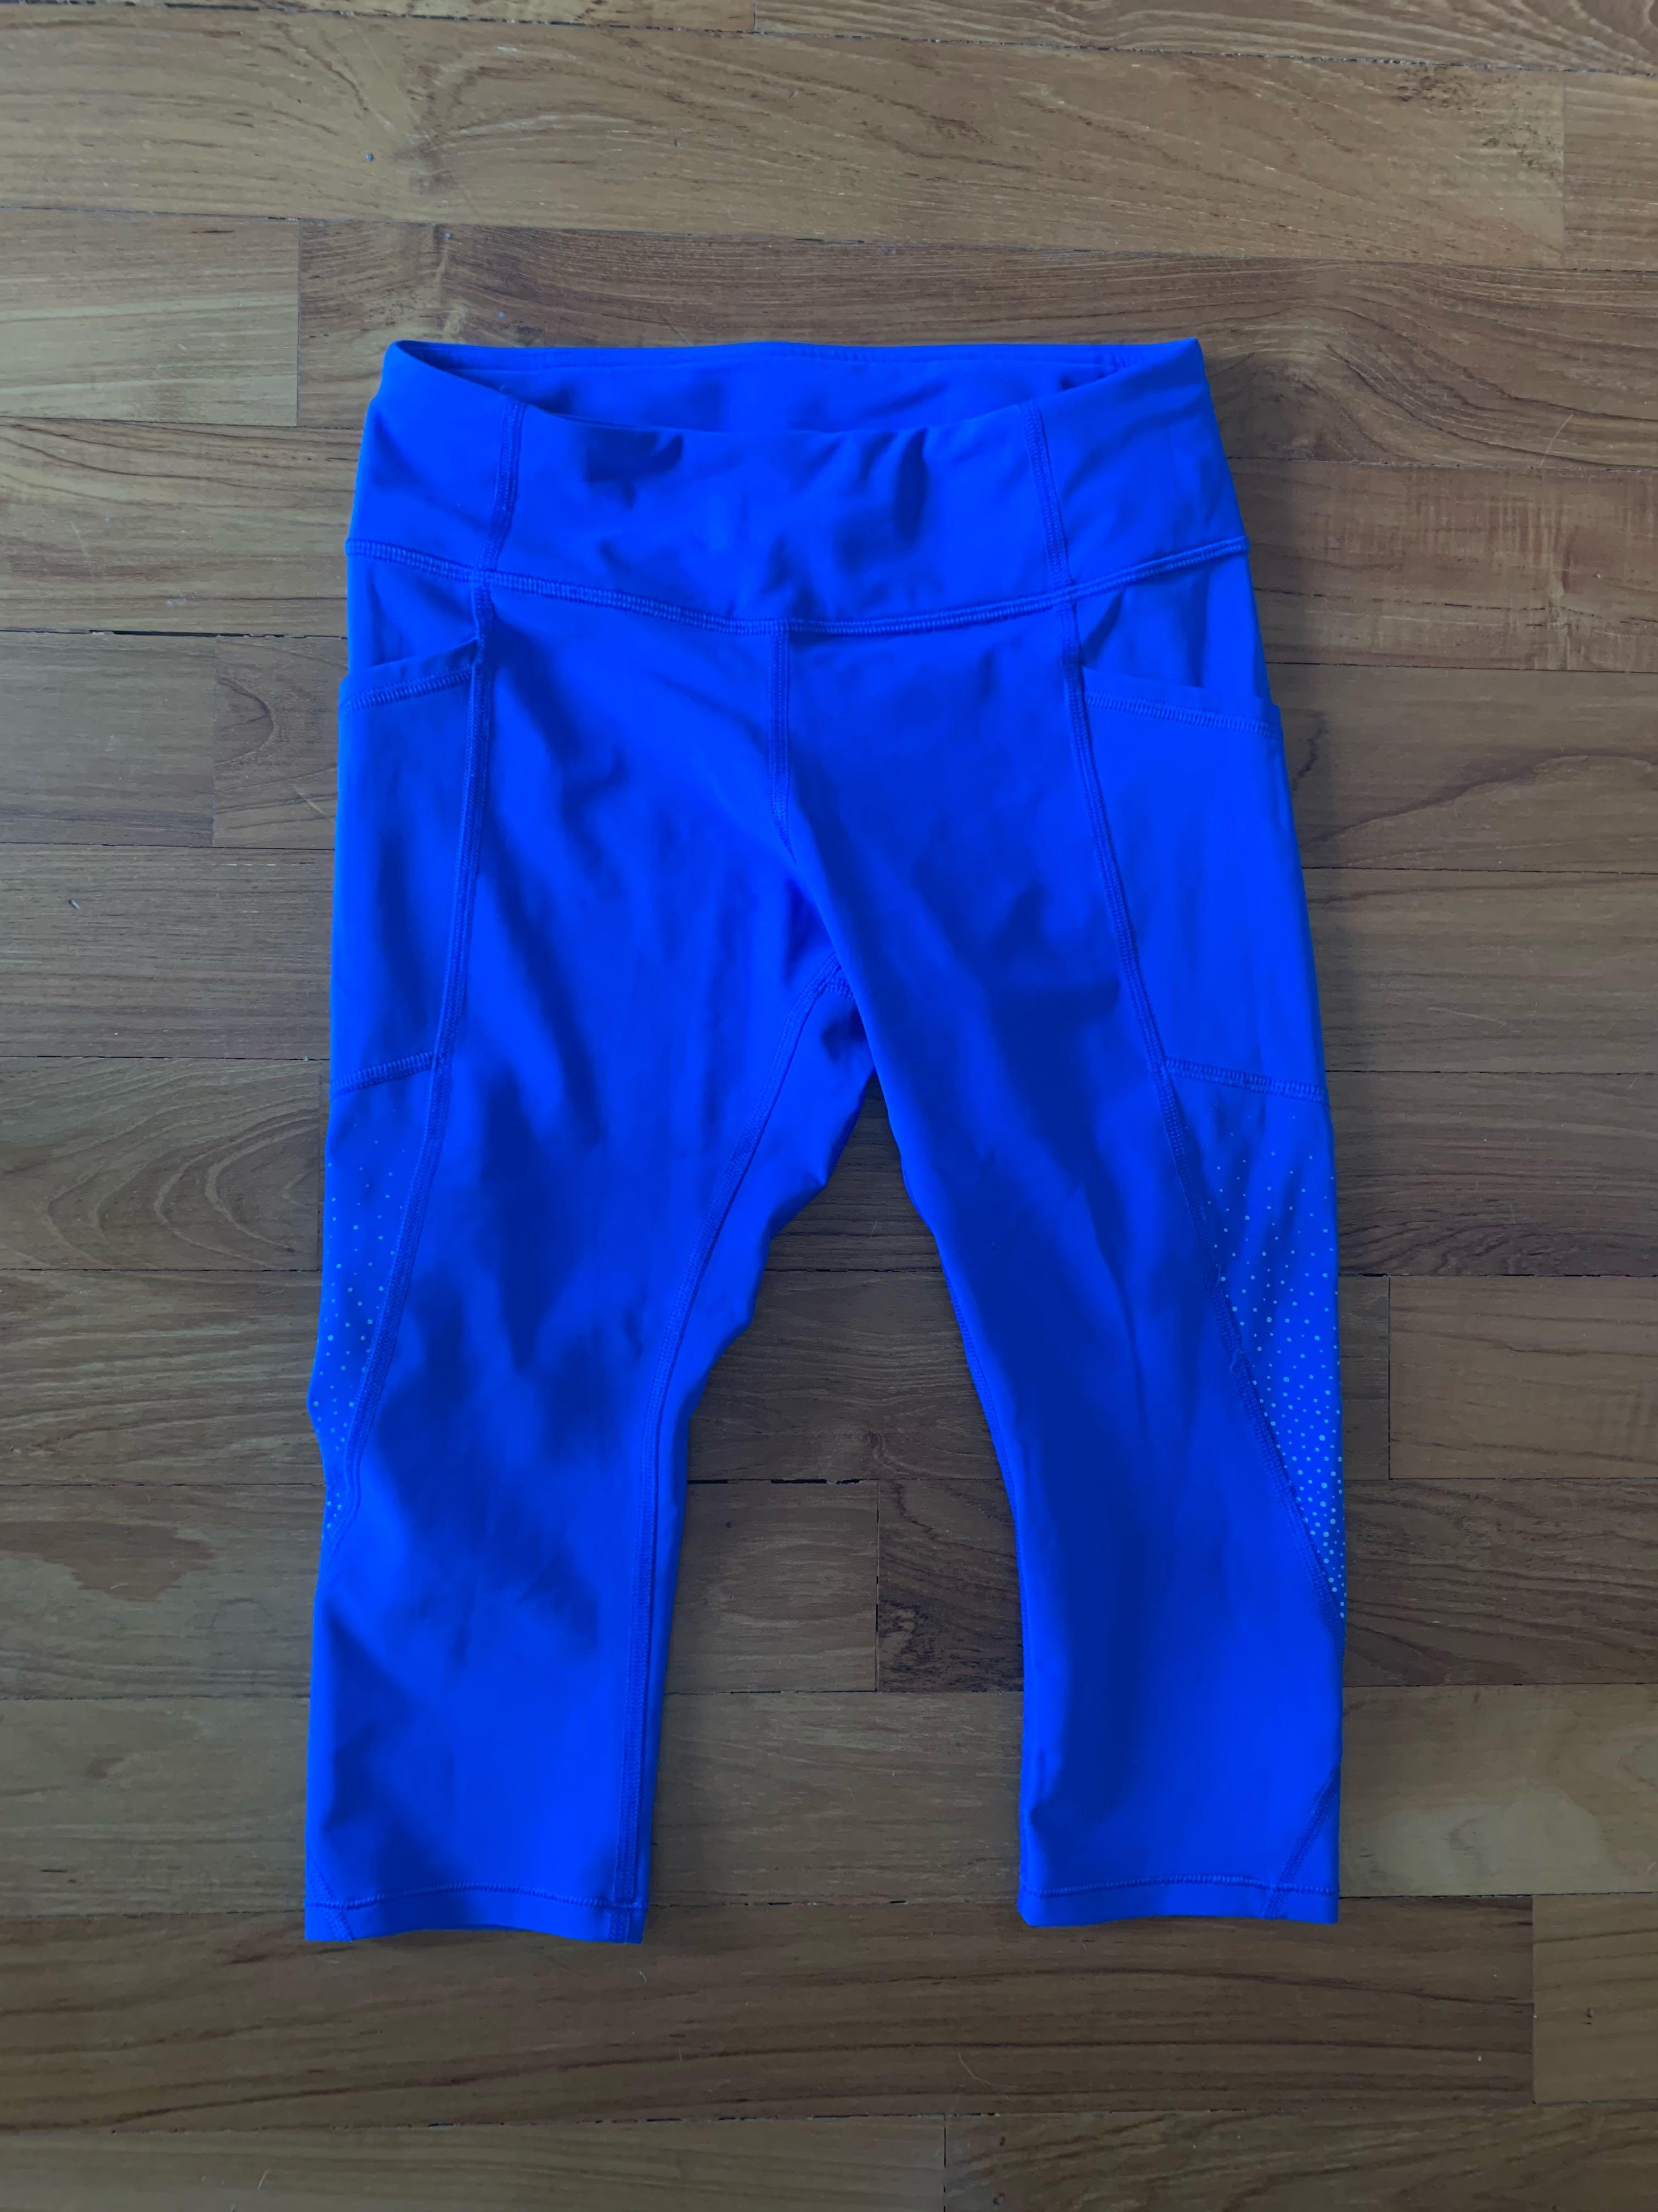 bright blue lululemon leggings